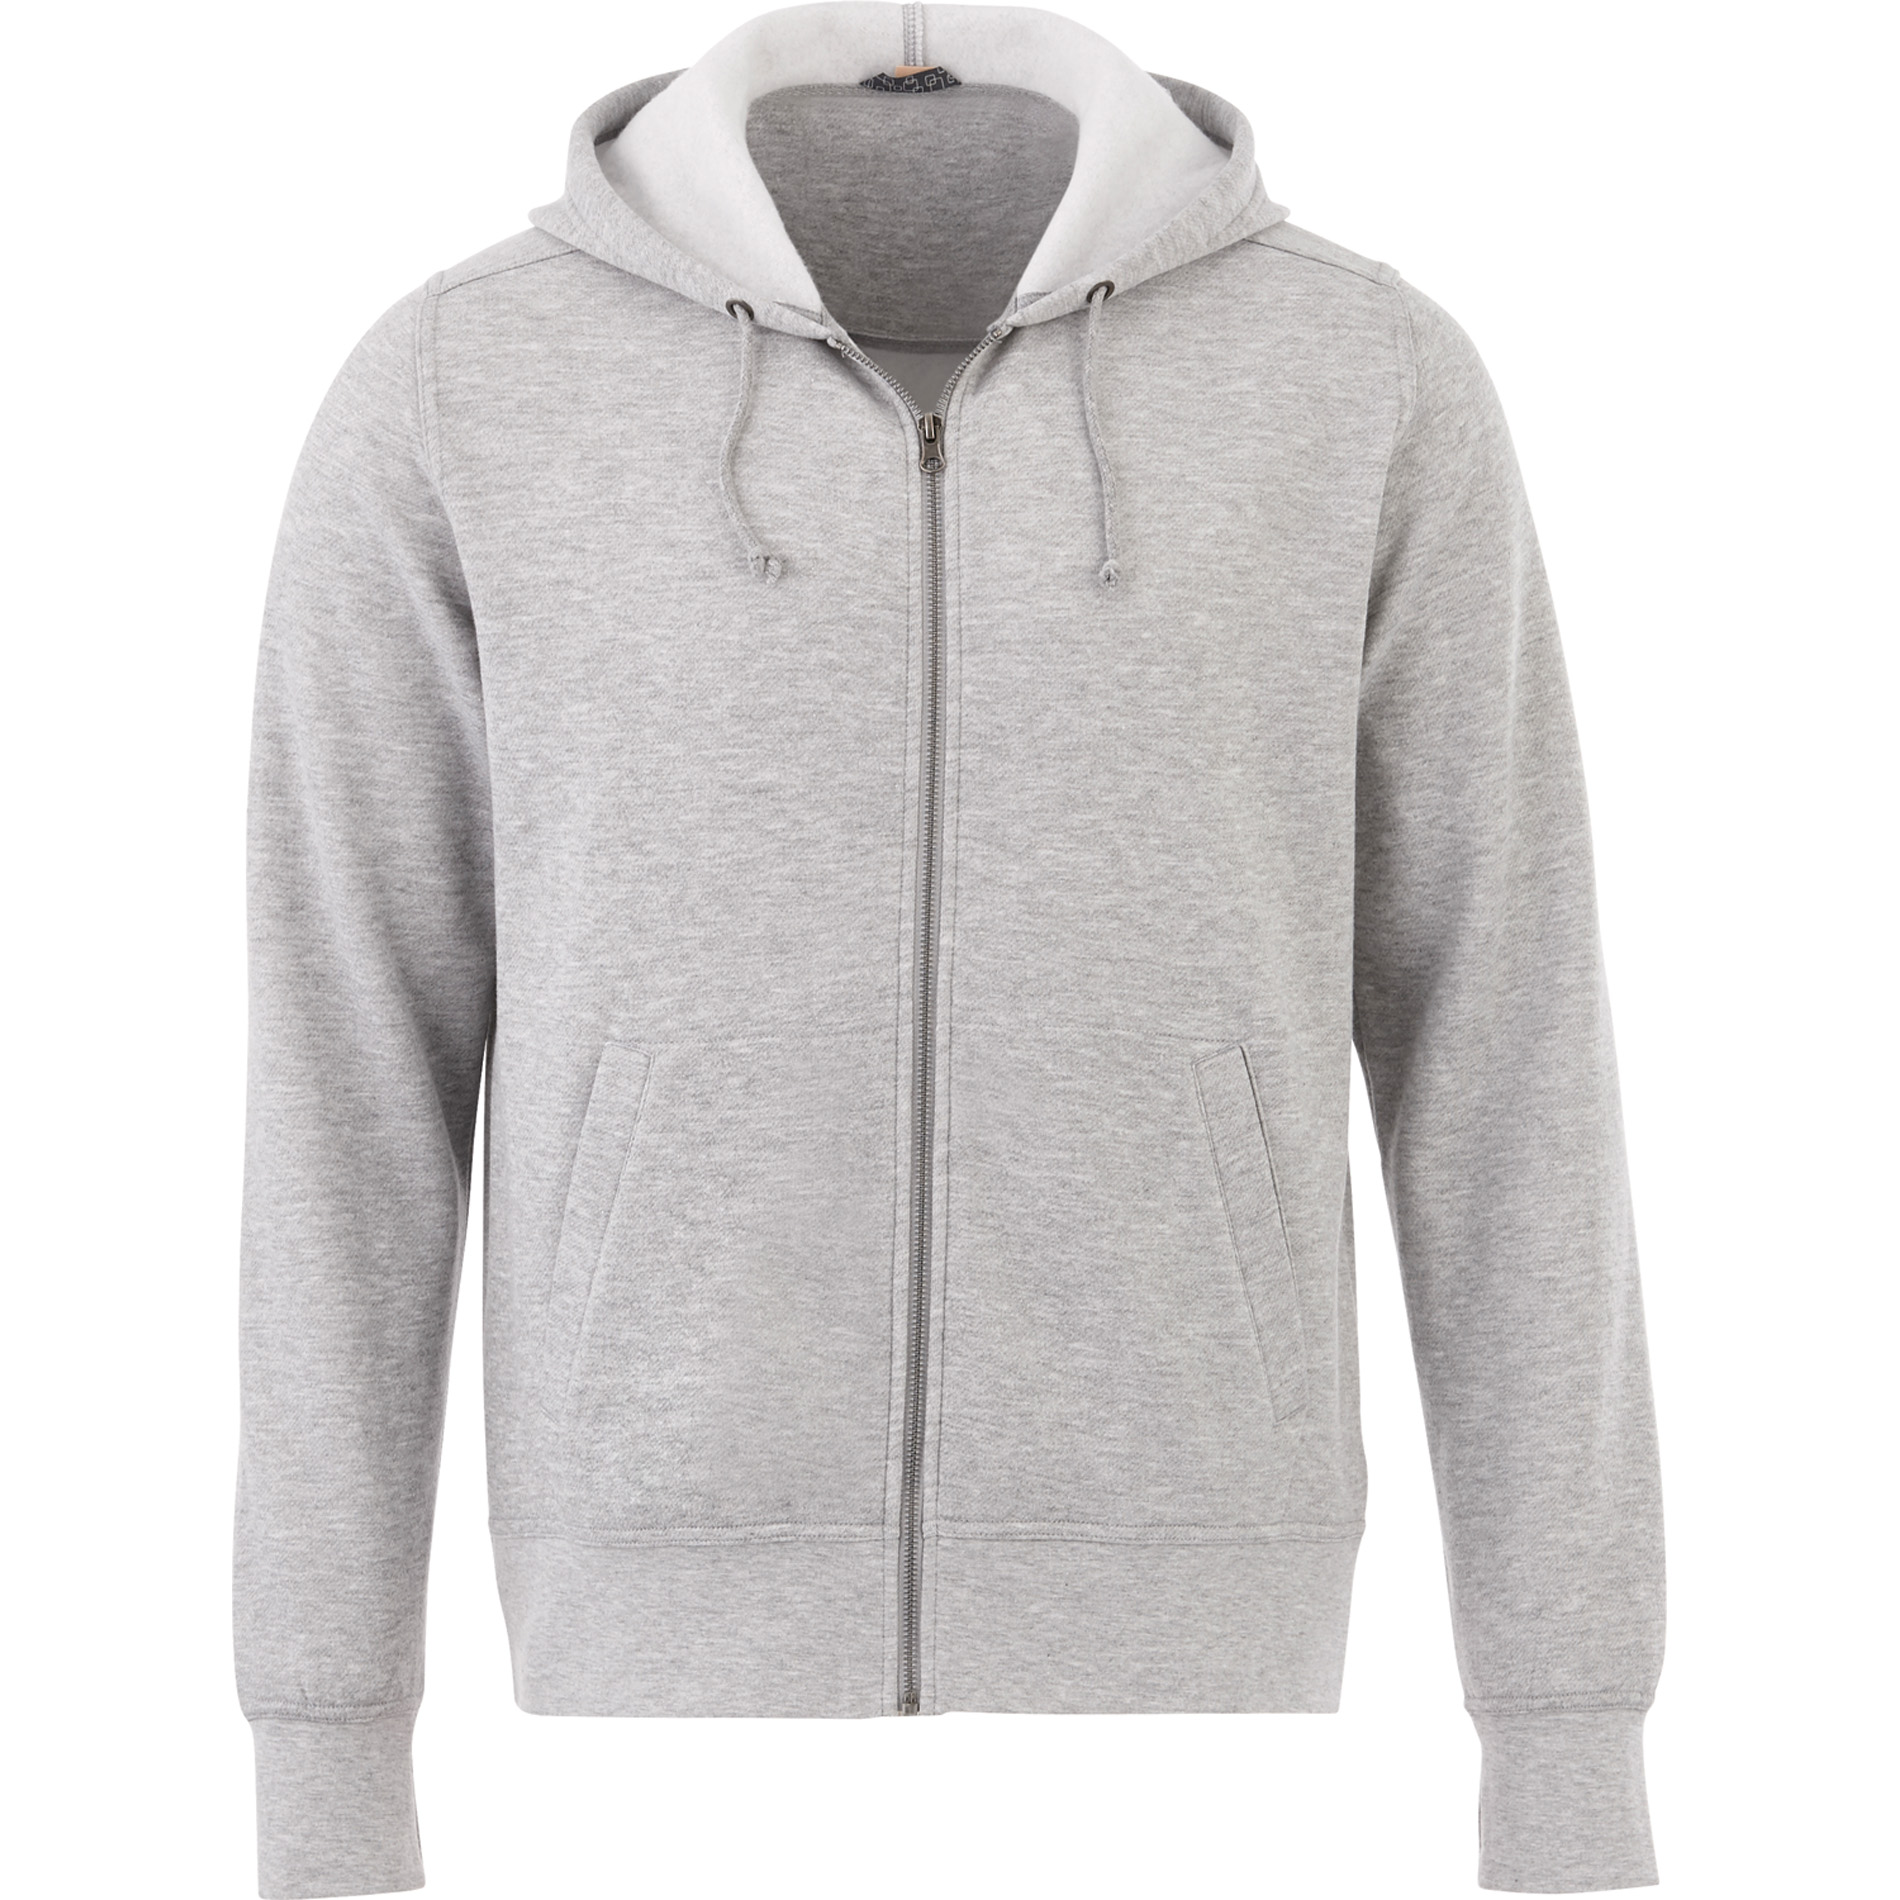 Trimark TM18135 - Men's CYPRESS Fleece Zip Hoodie $22.57 - Sweatshirts